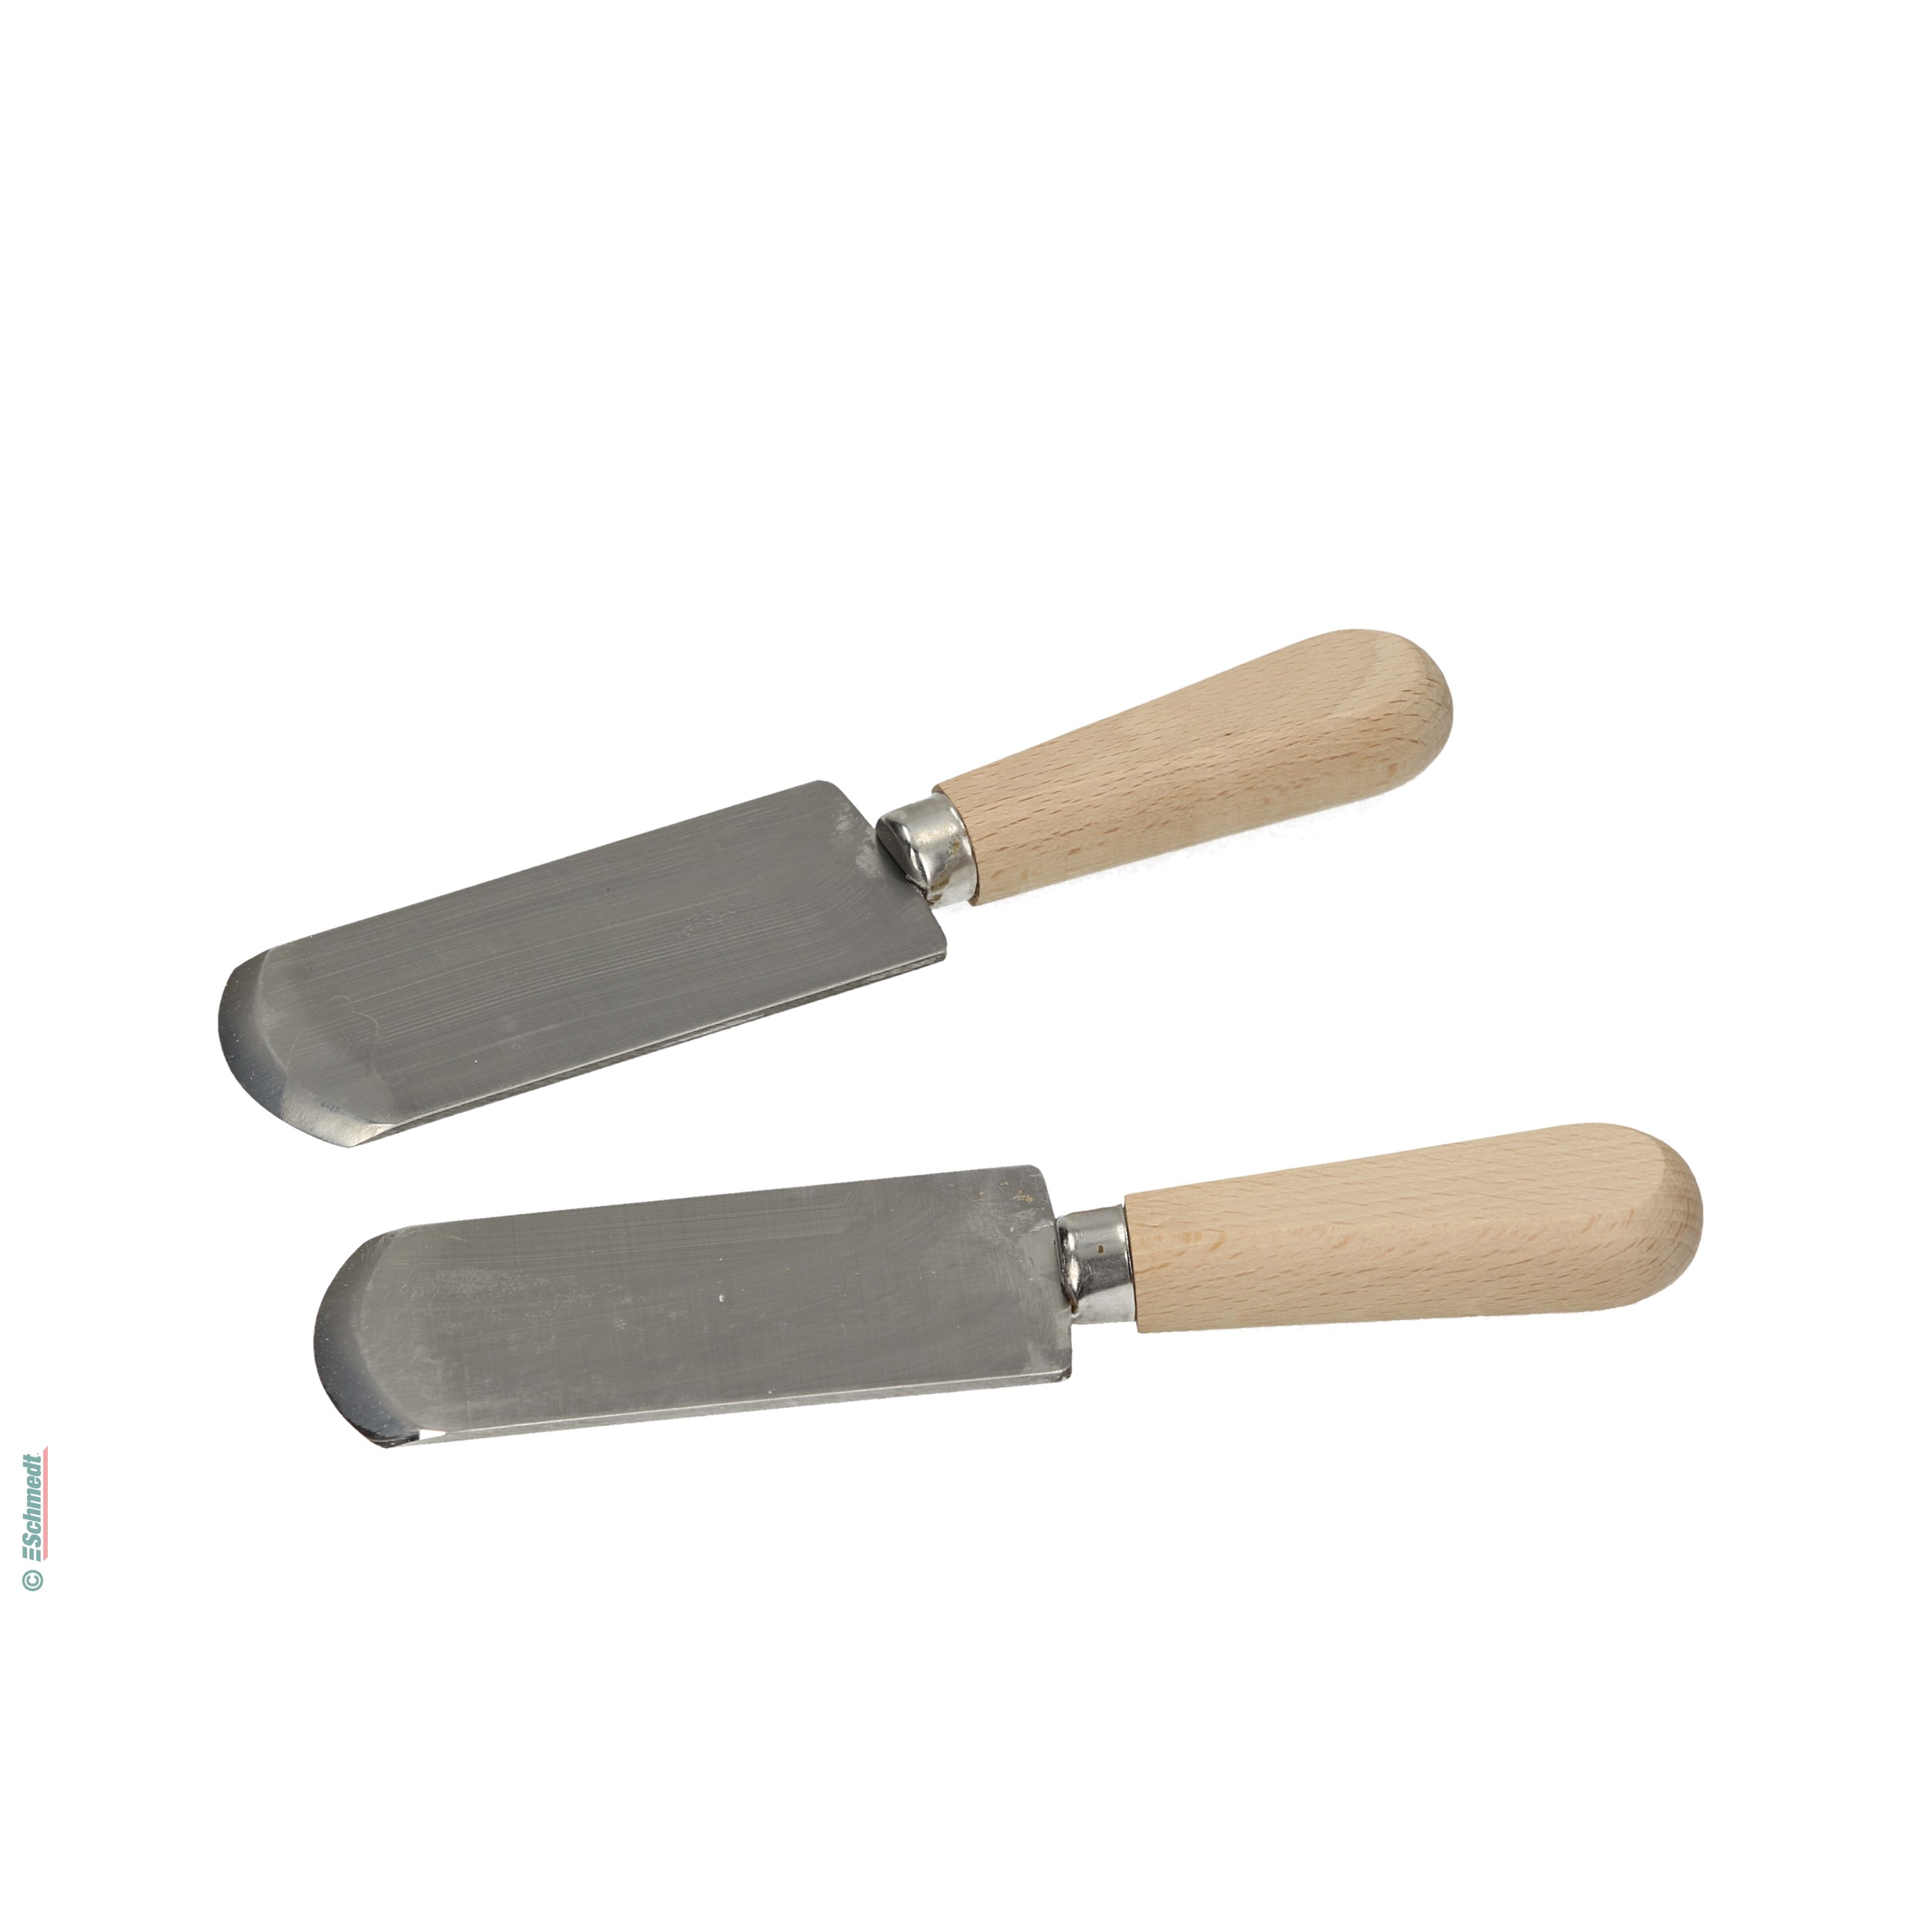 Chifla francesa con cuchilla rígida - Largo total: 19 cm - Cuchilla de aprox. 2 mm de grosor - para chiflar el cuero para su posterior trata...